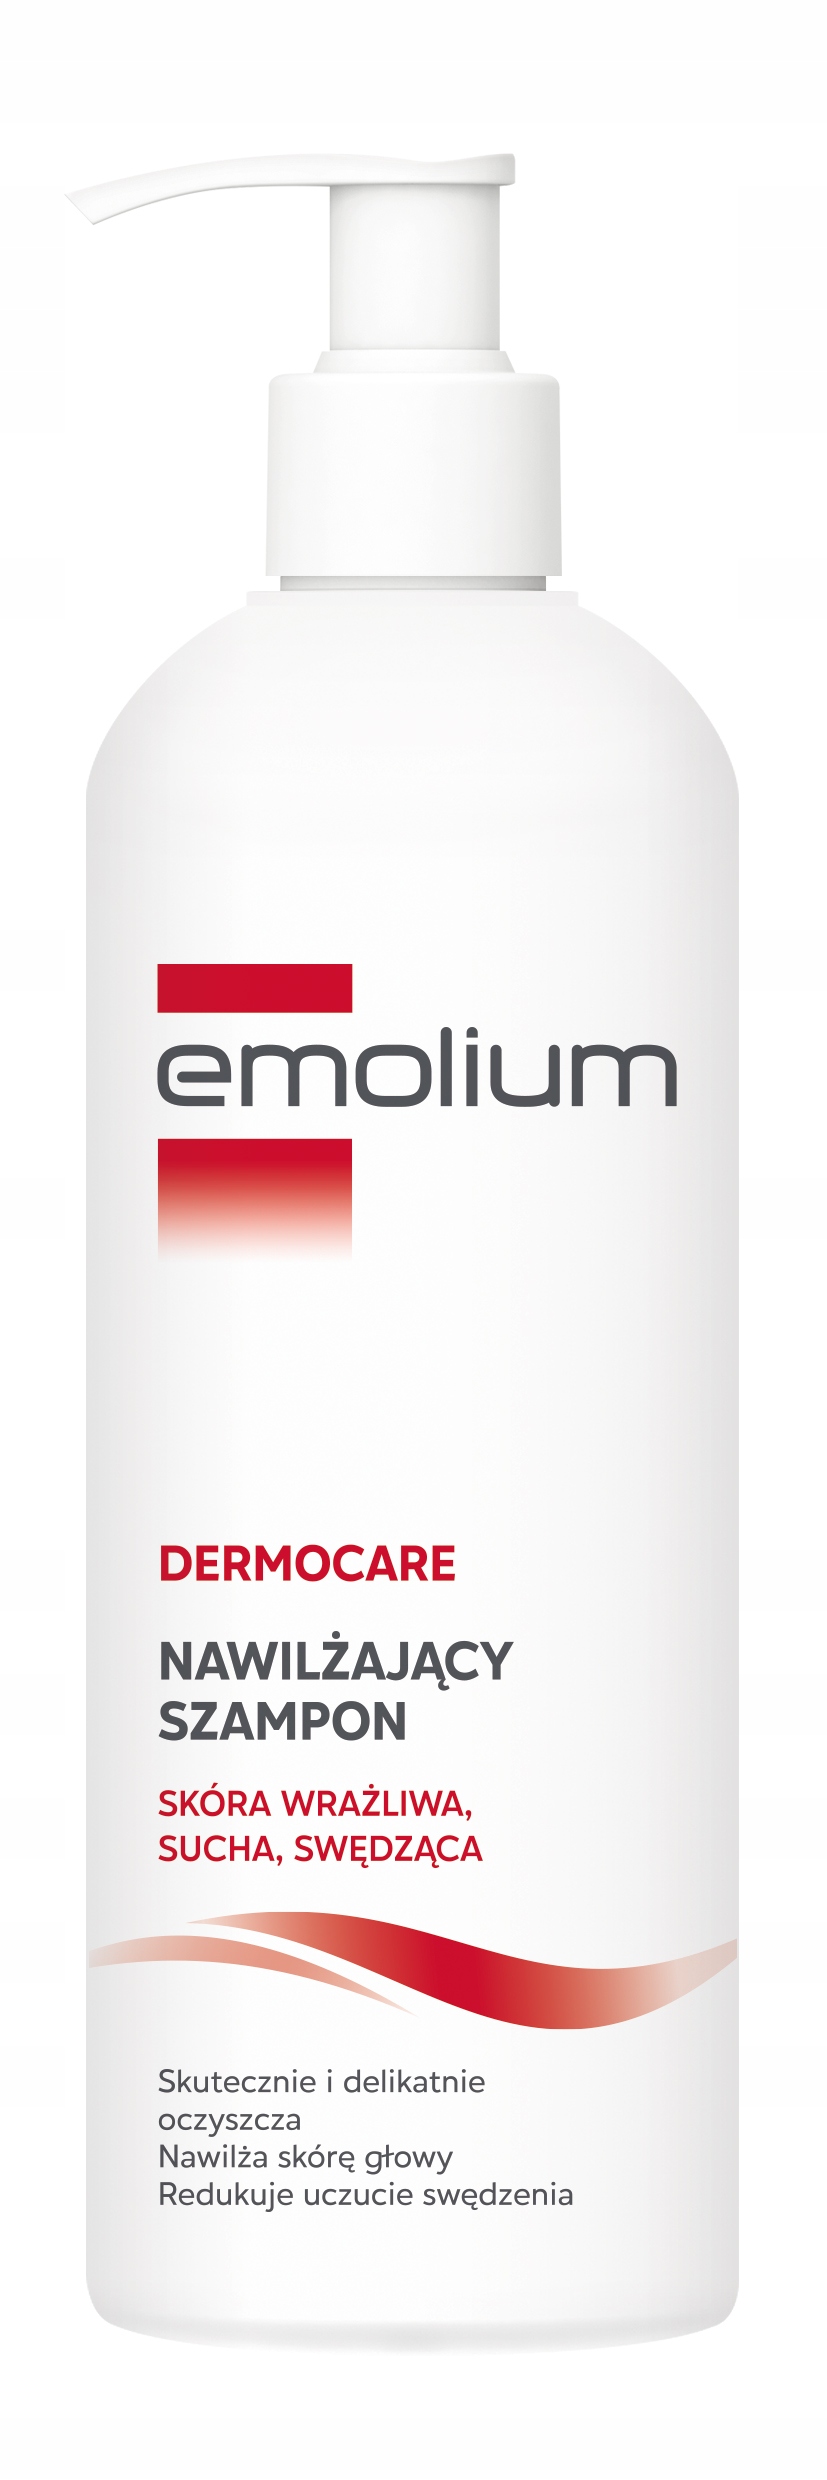 emolium szampon plus balsam allegro